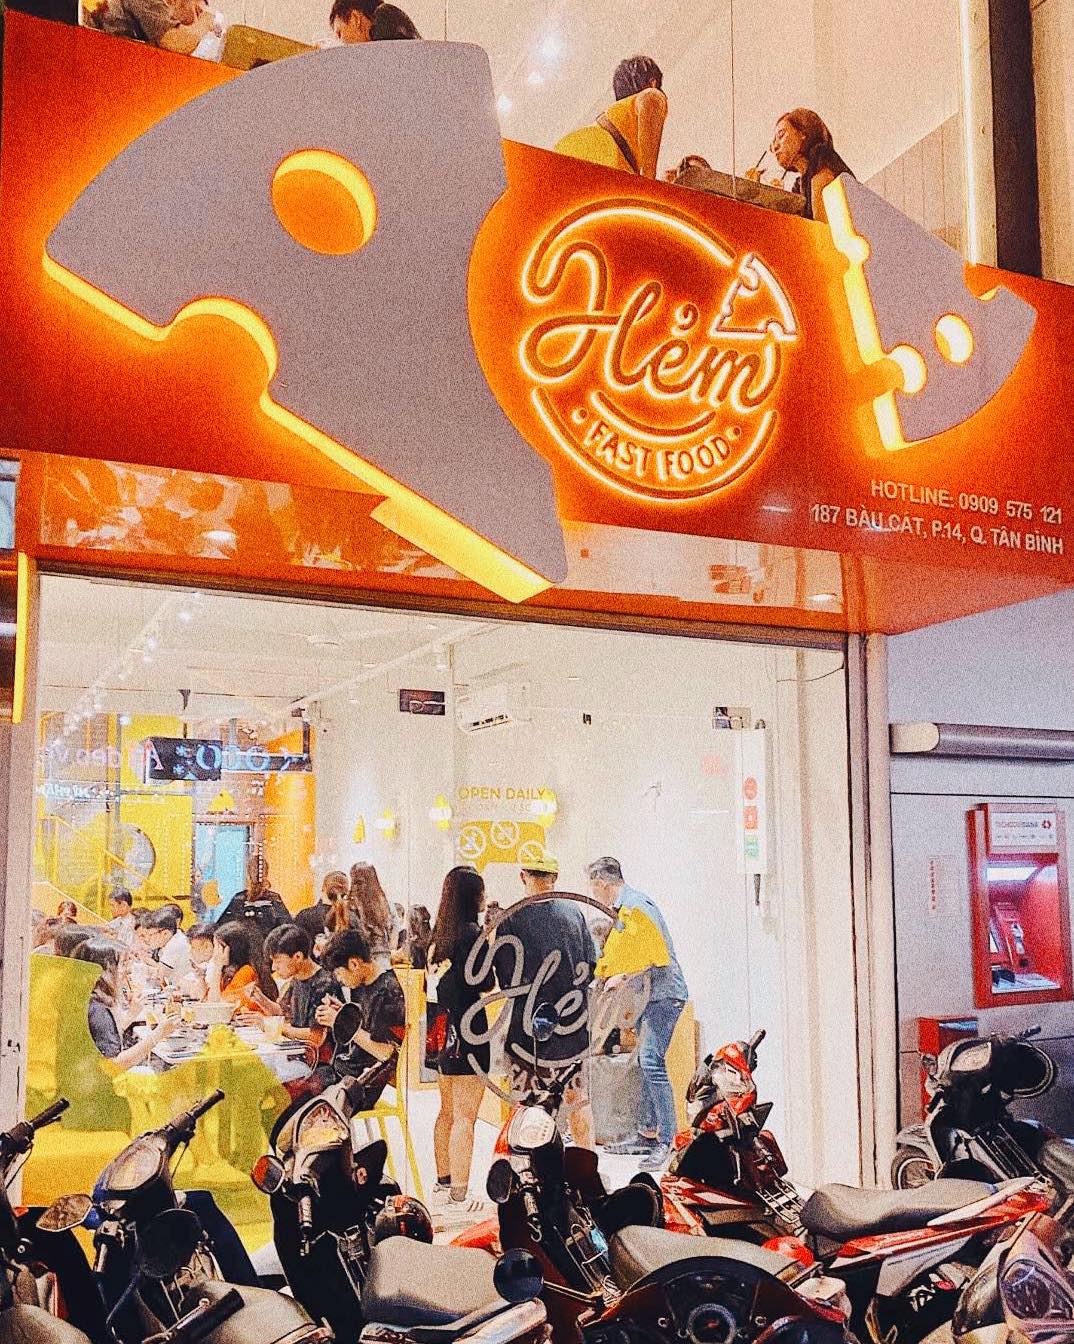 Hem fast food Saigon